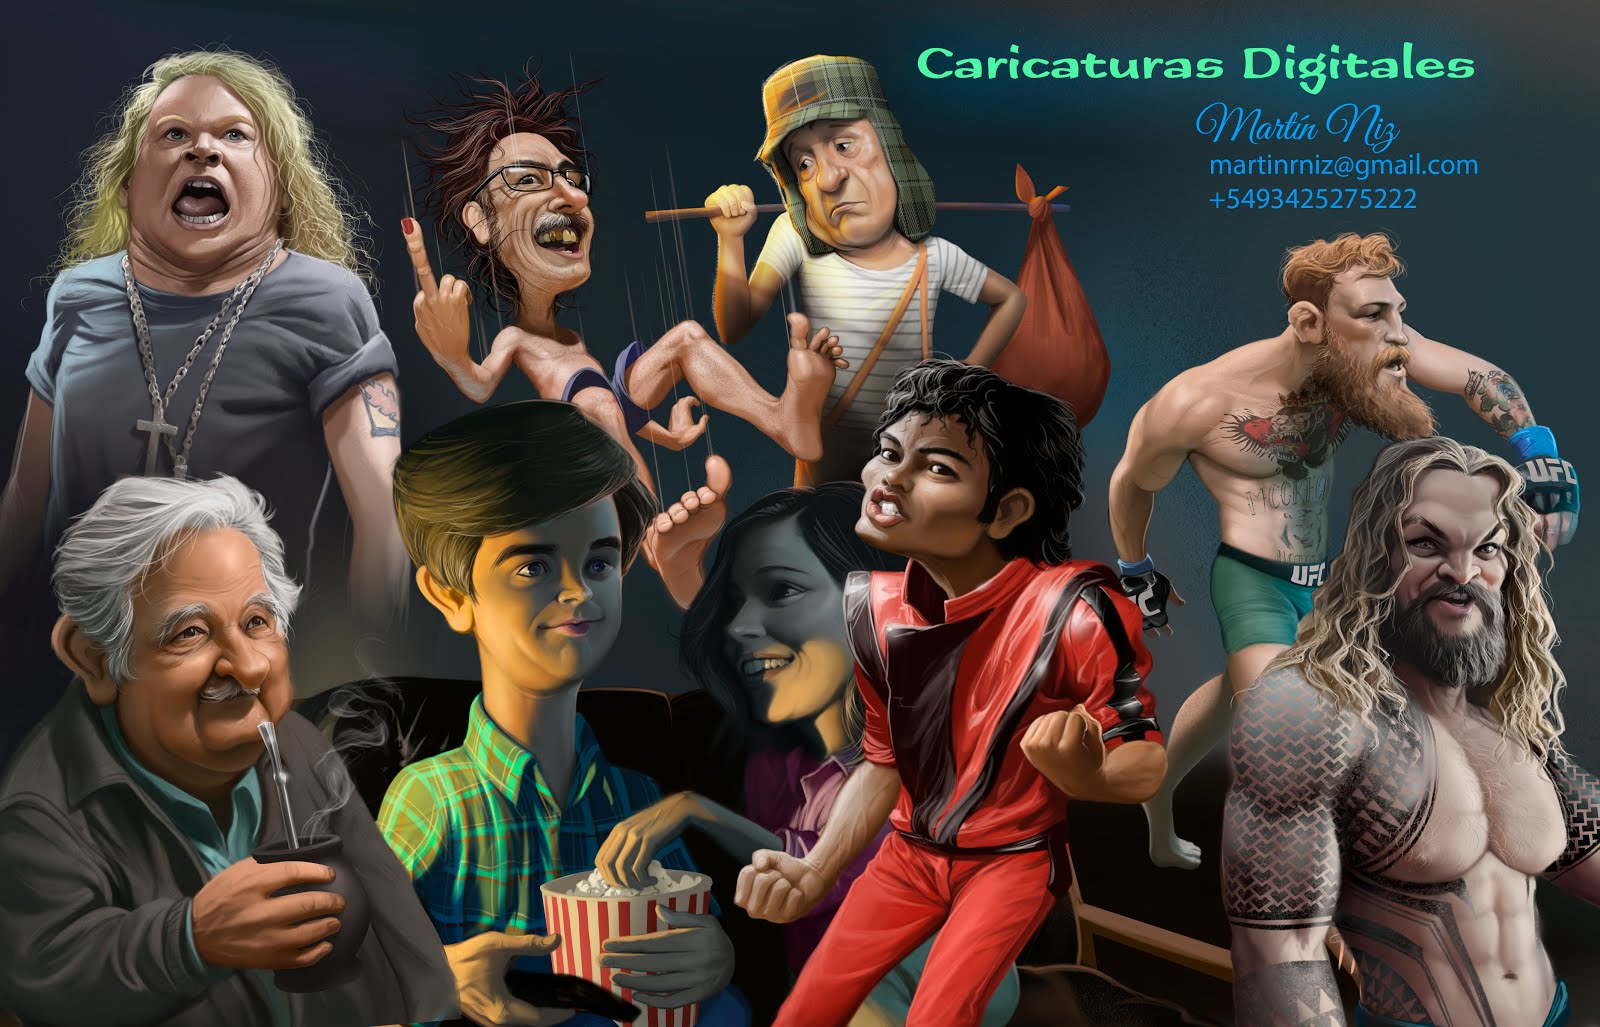 Caricaturas y Retratos Digitales y Artesanales. Animaciones 2D y 3D. ilustraciones en gral.